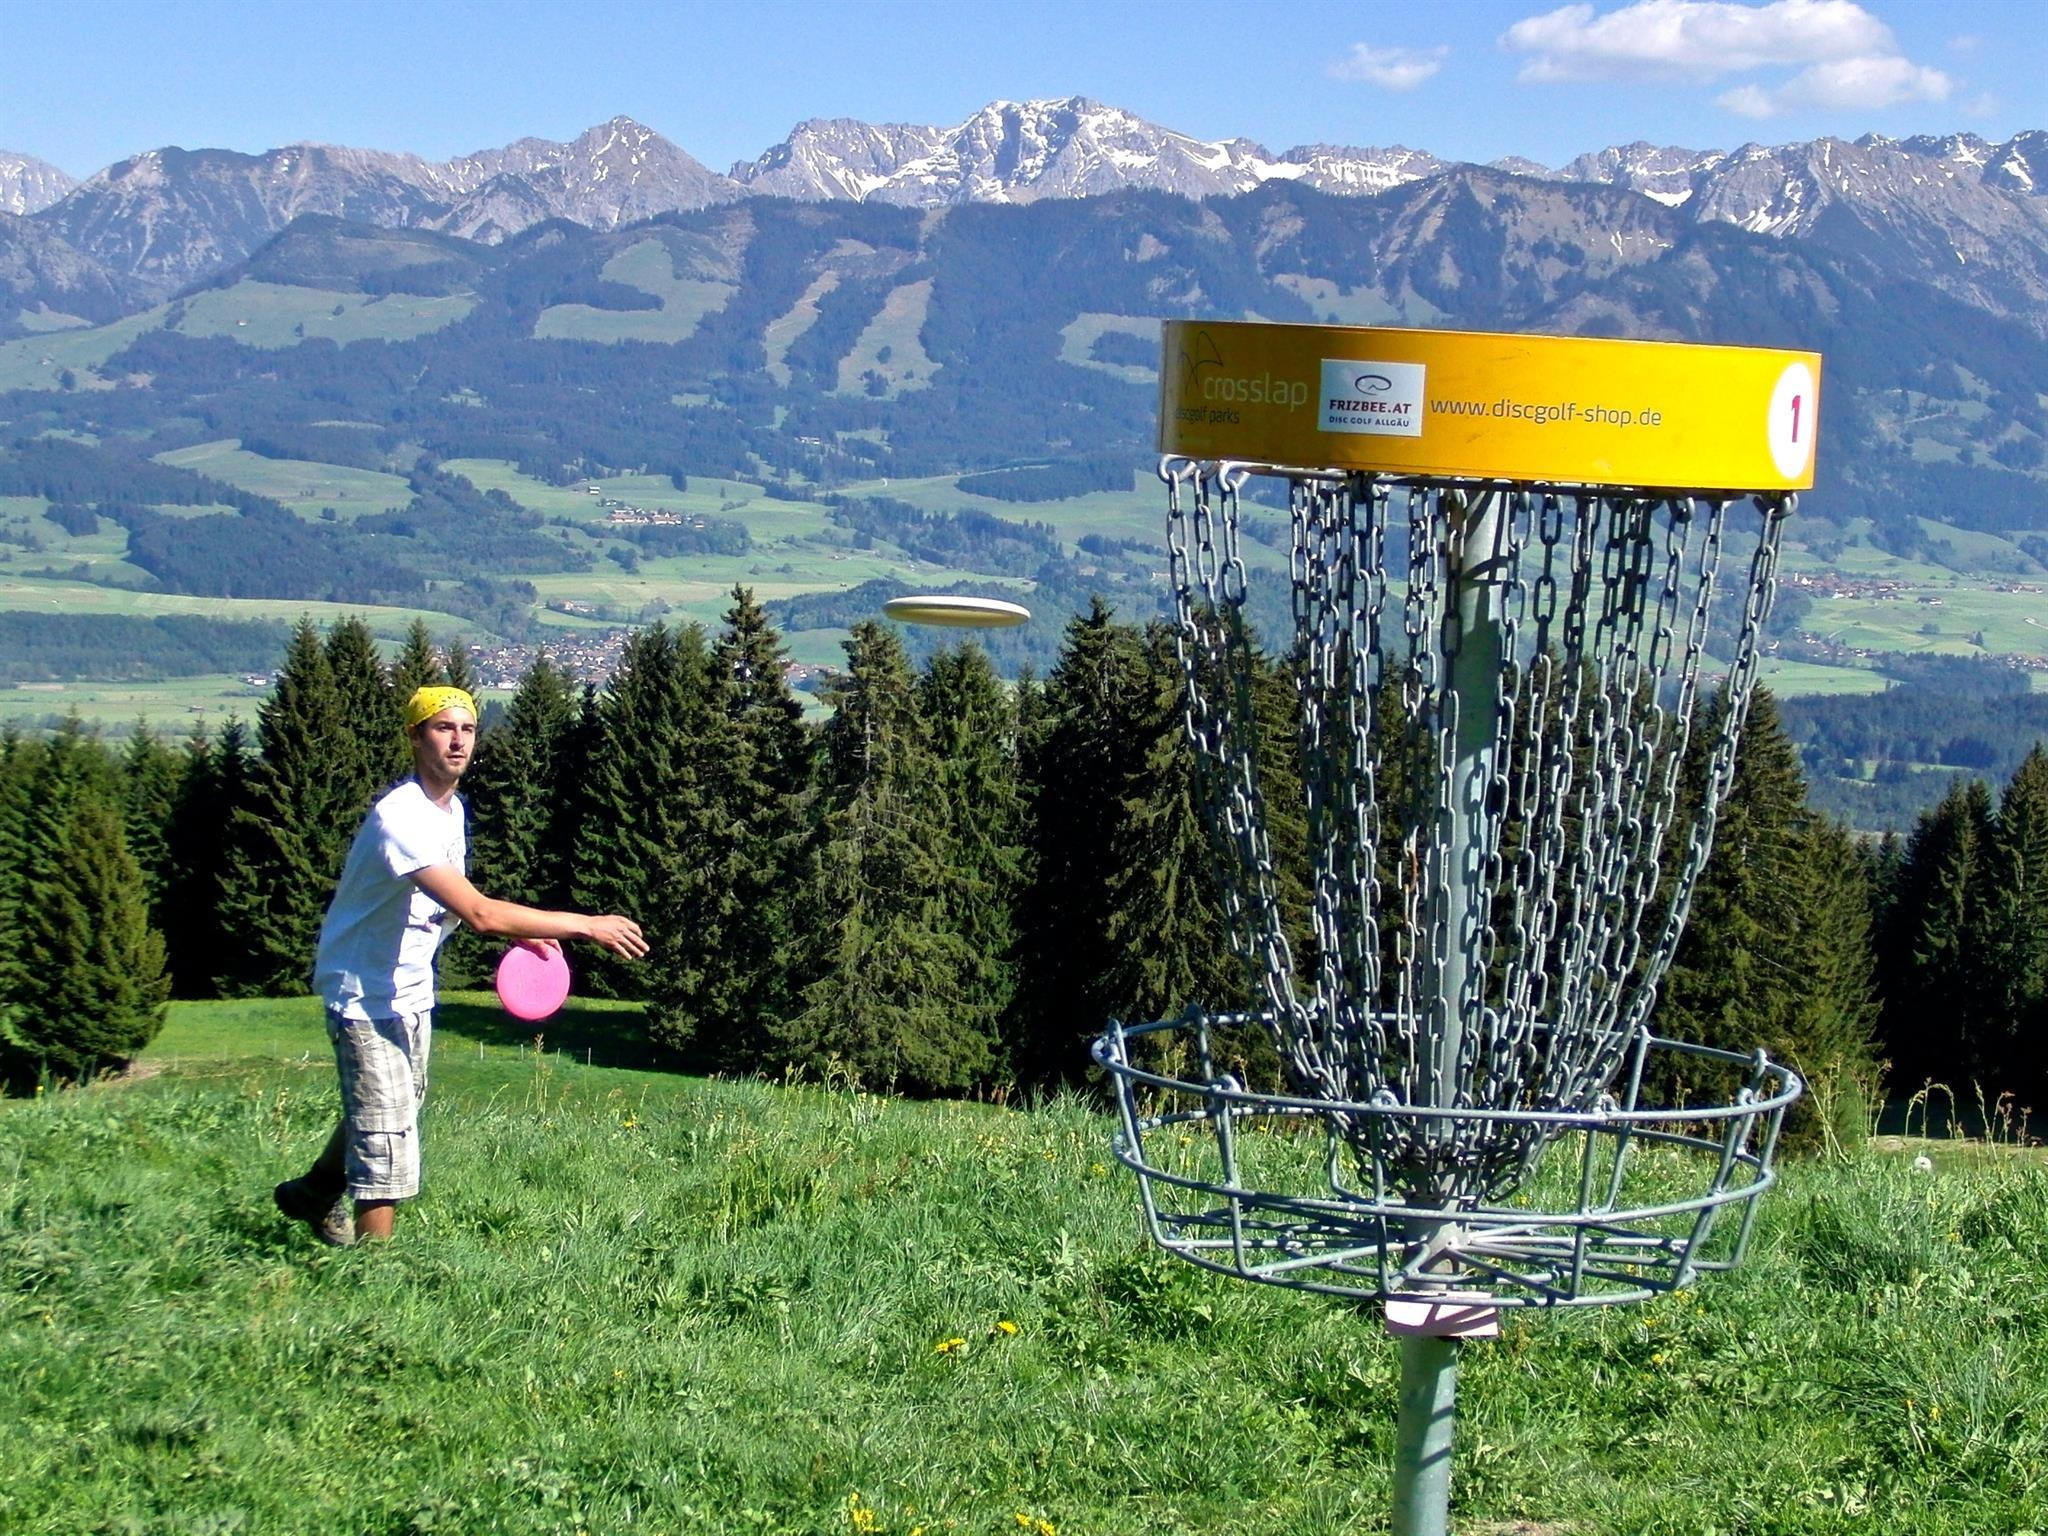 Flying disc sports, Disc golf Ofterschwang, Bavarian Alps, 2050x1540 HD Desktop